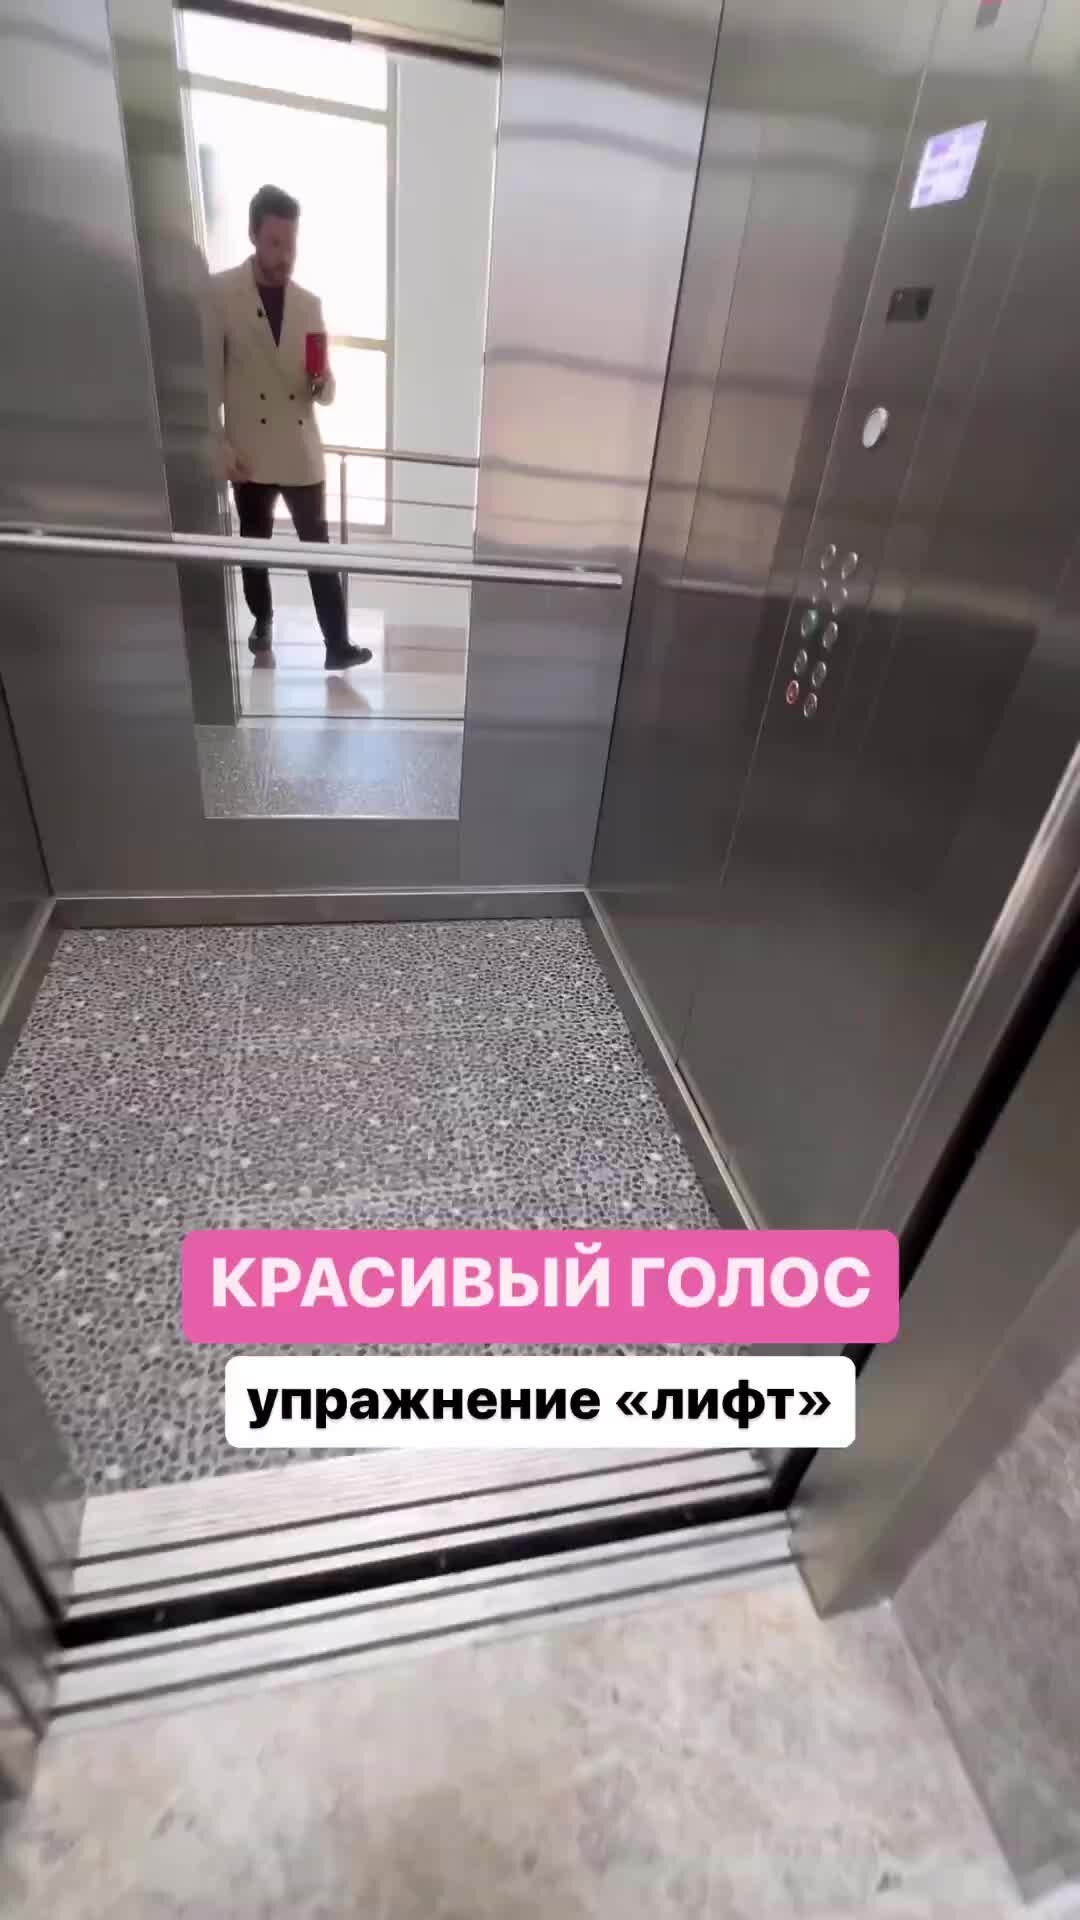 Лифт в будущее | ВКонтакте